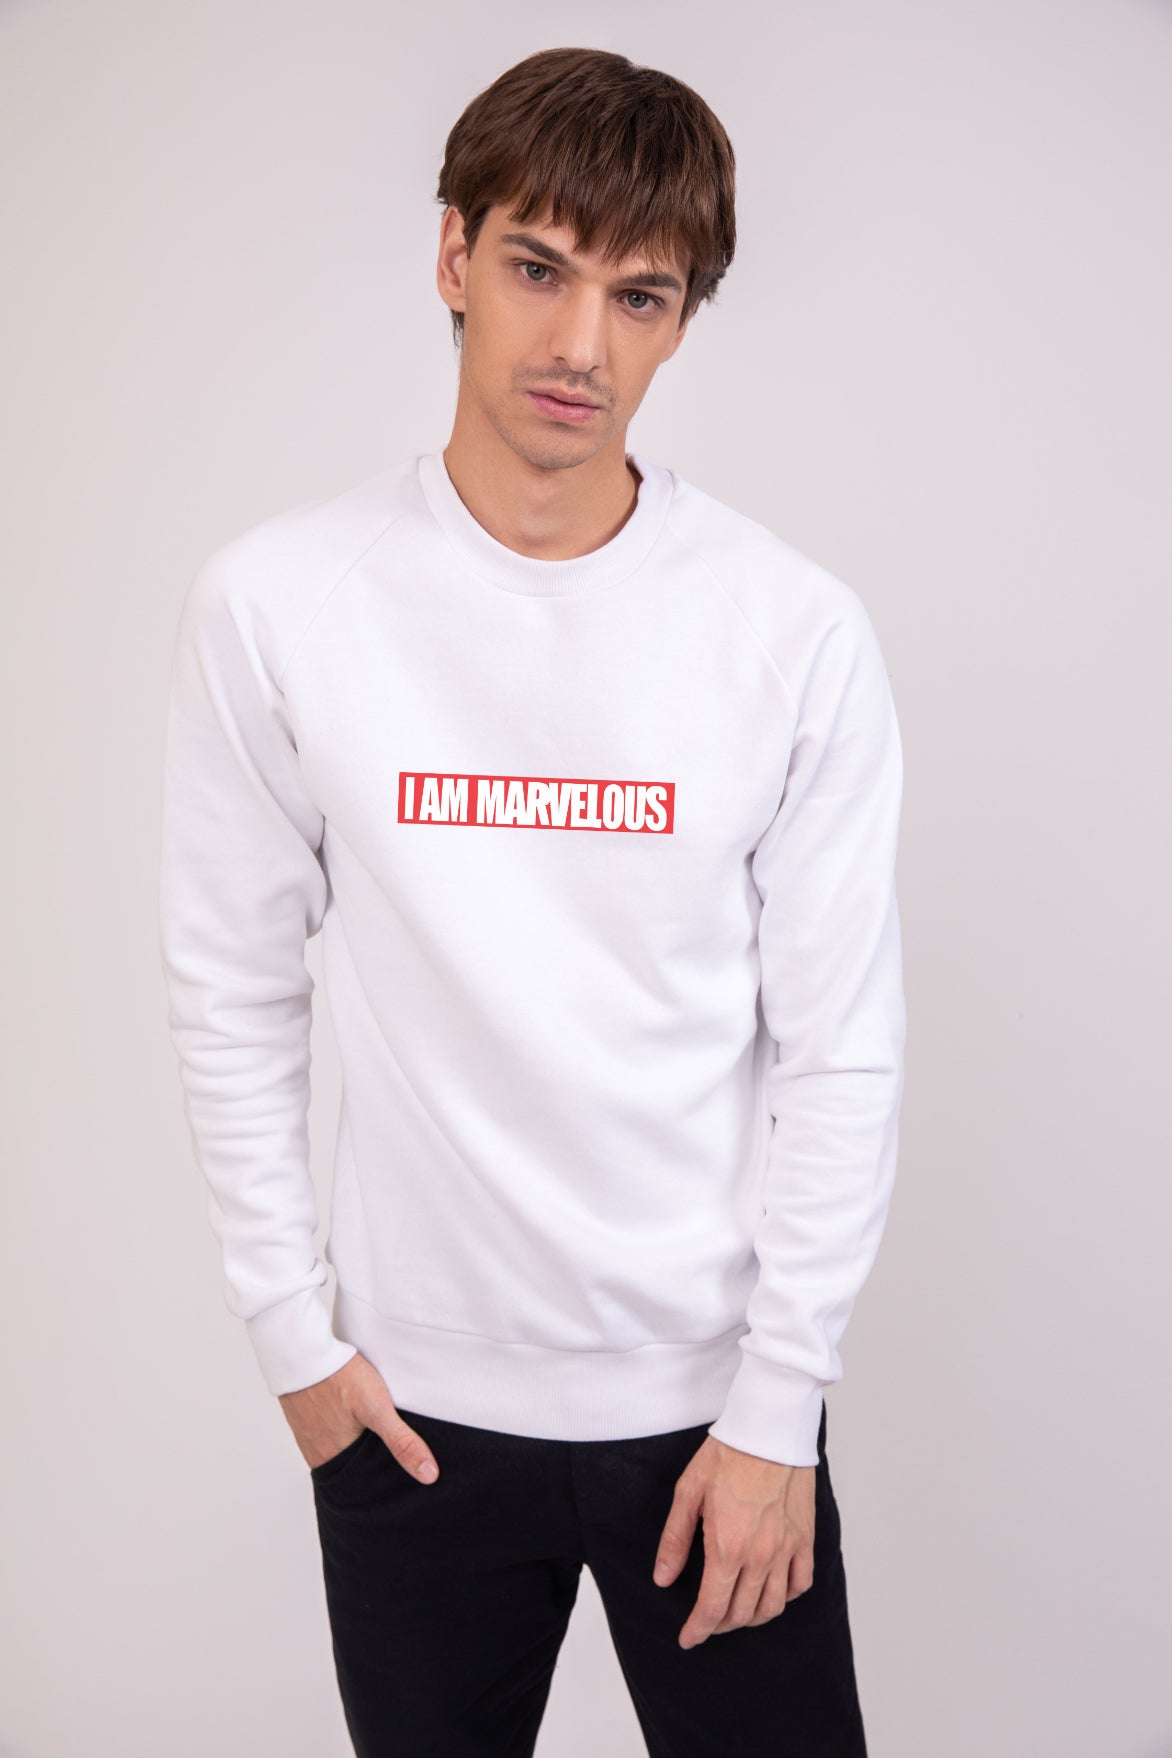 I am Marvelous Radiant White - Printed Sweatshirt